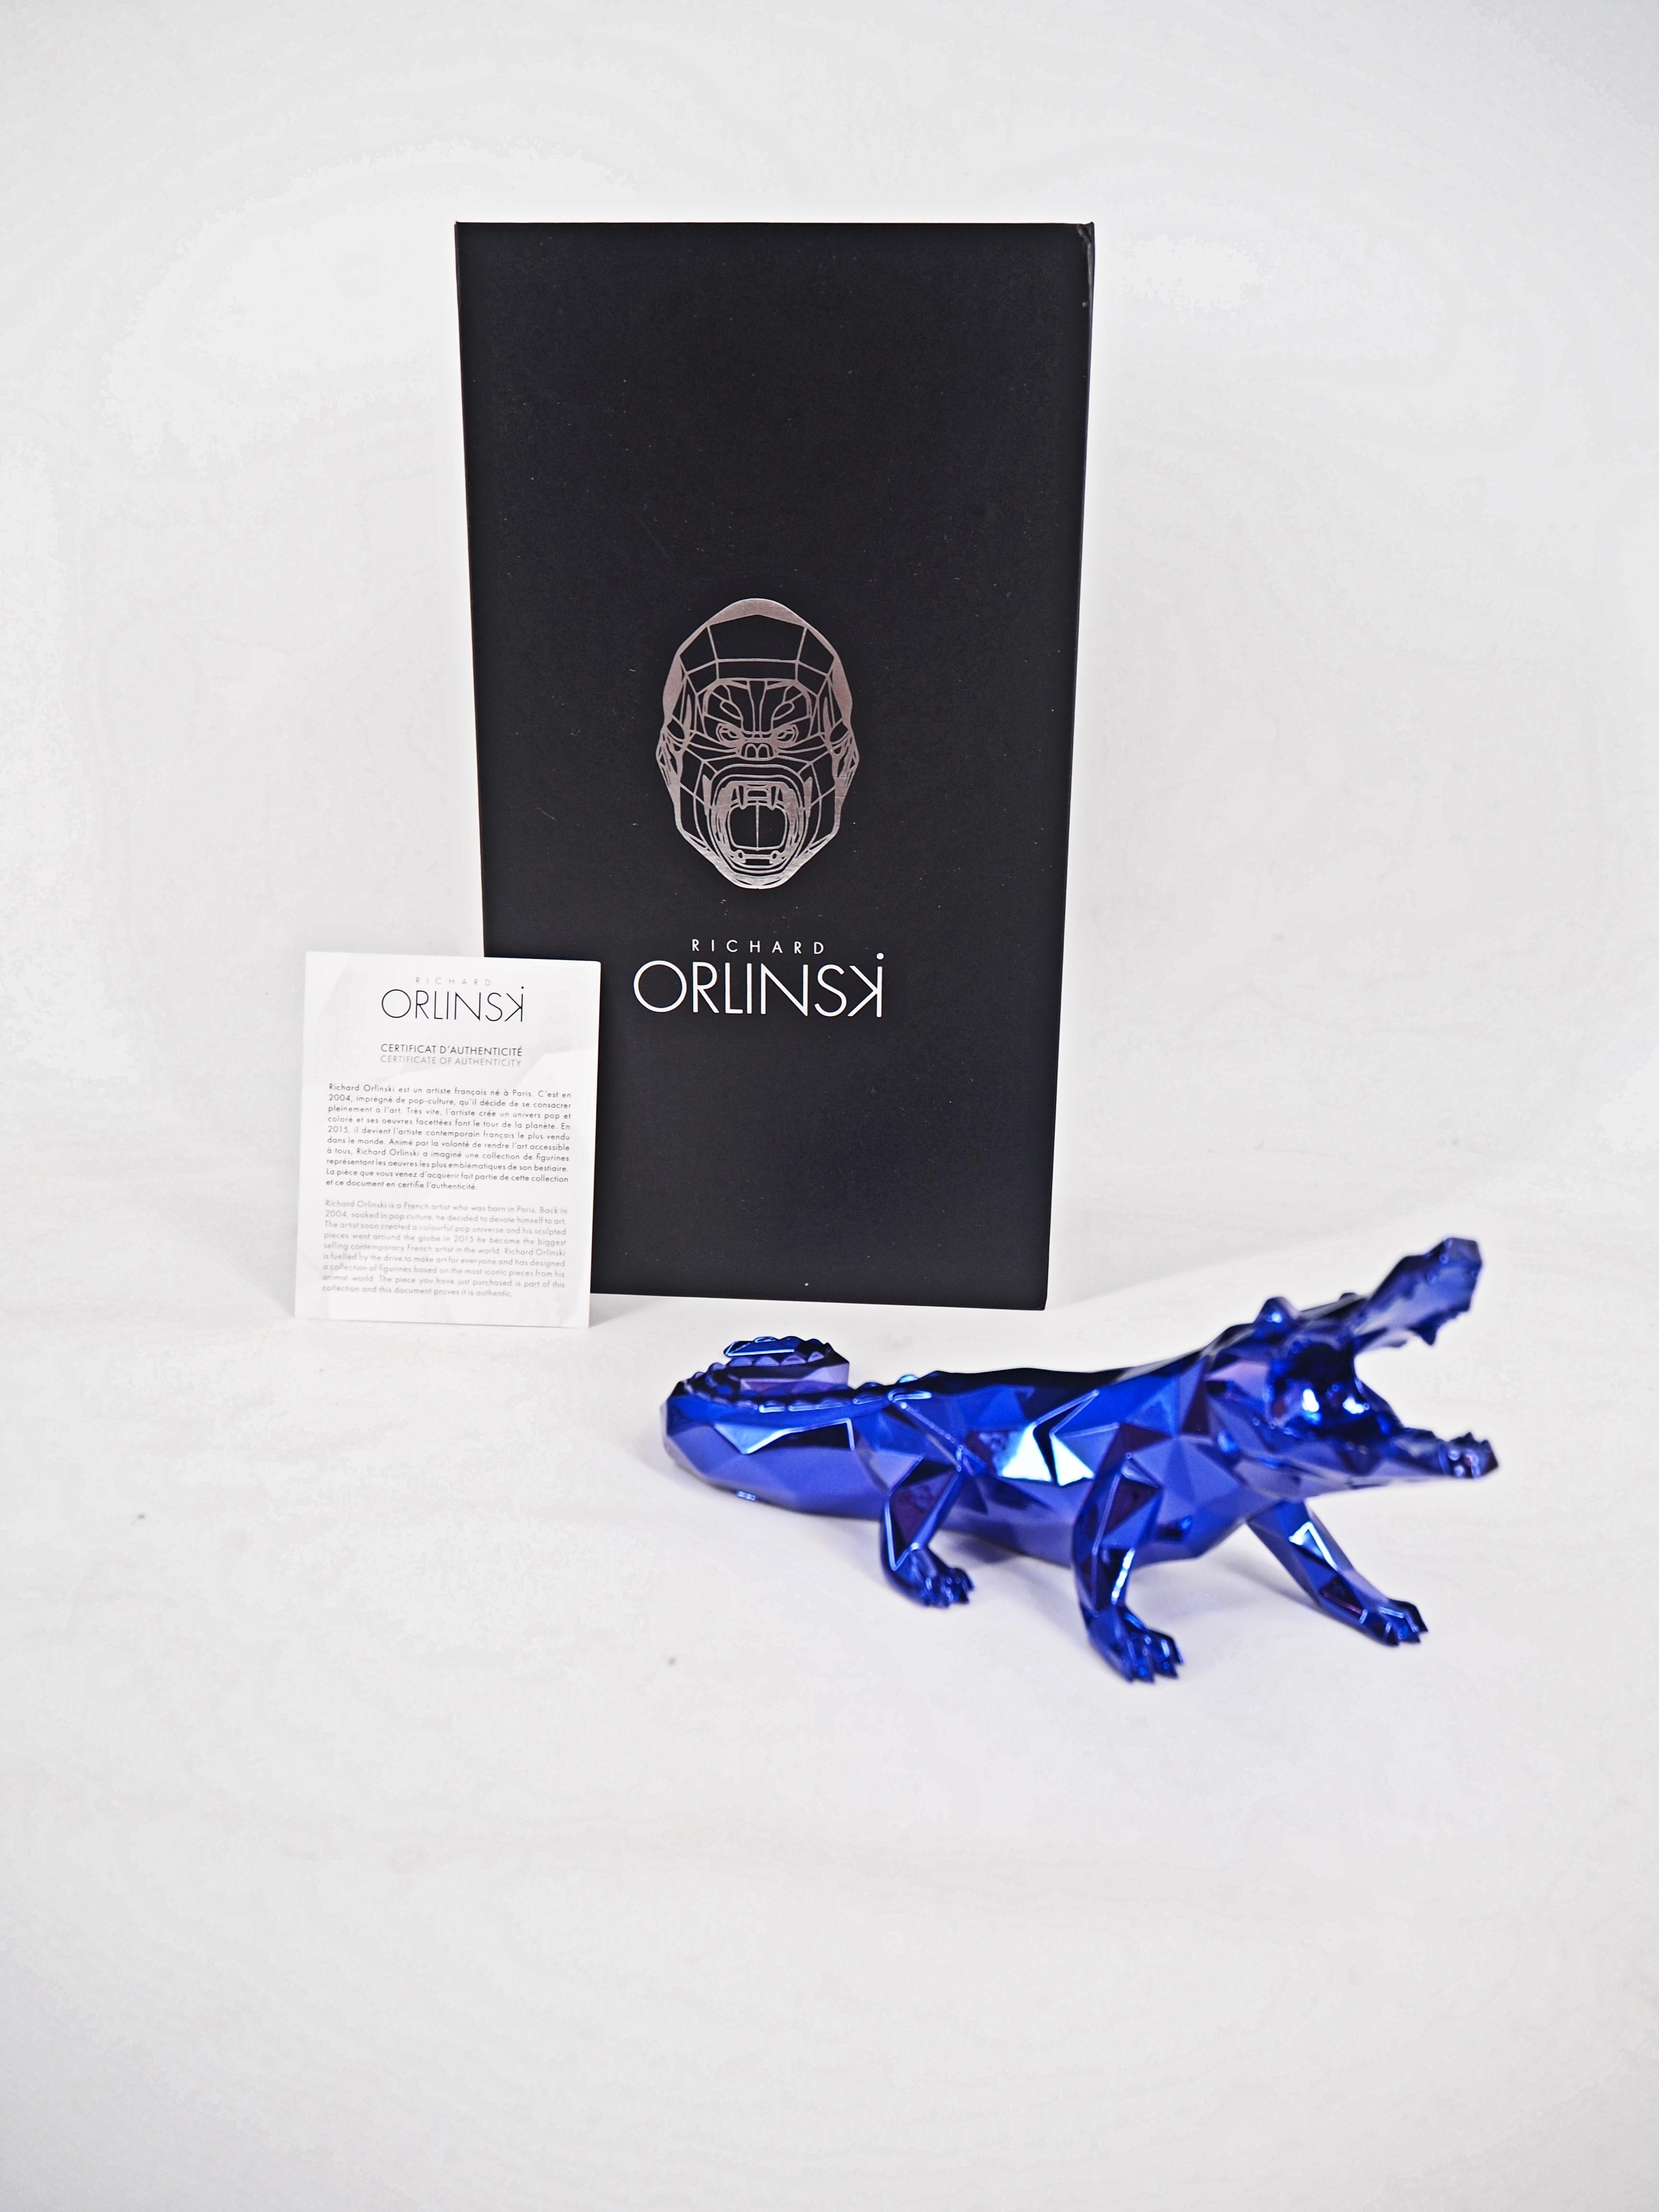 Richard ORLINSKI
Esprit croco (édition violette)

Sculpture en résine
Violet
Environ 24 x10 x 8 cm (c. 9.5 x 4 x 3 in)
Présenté dans sa boîte d'origine avec certificat

Excellent état